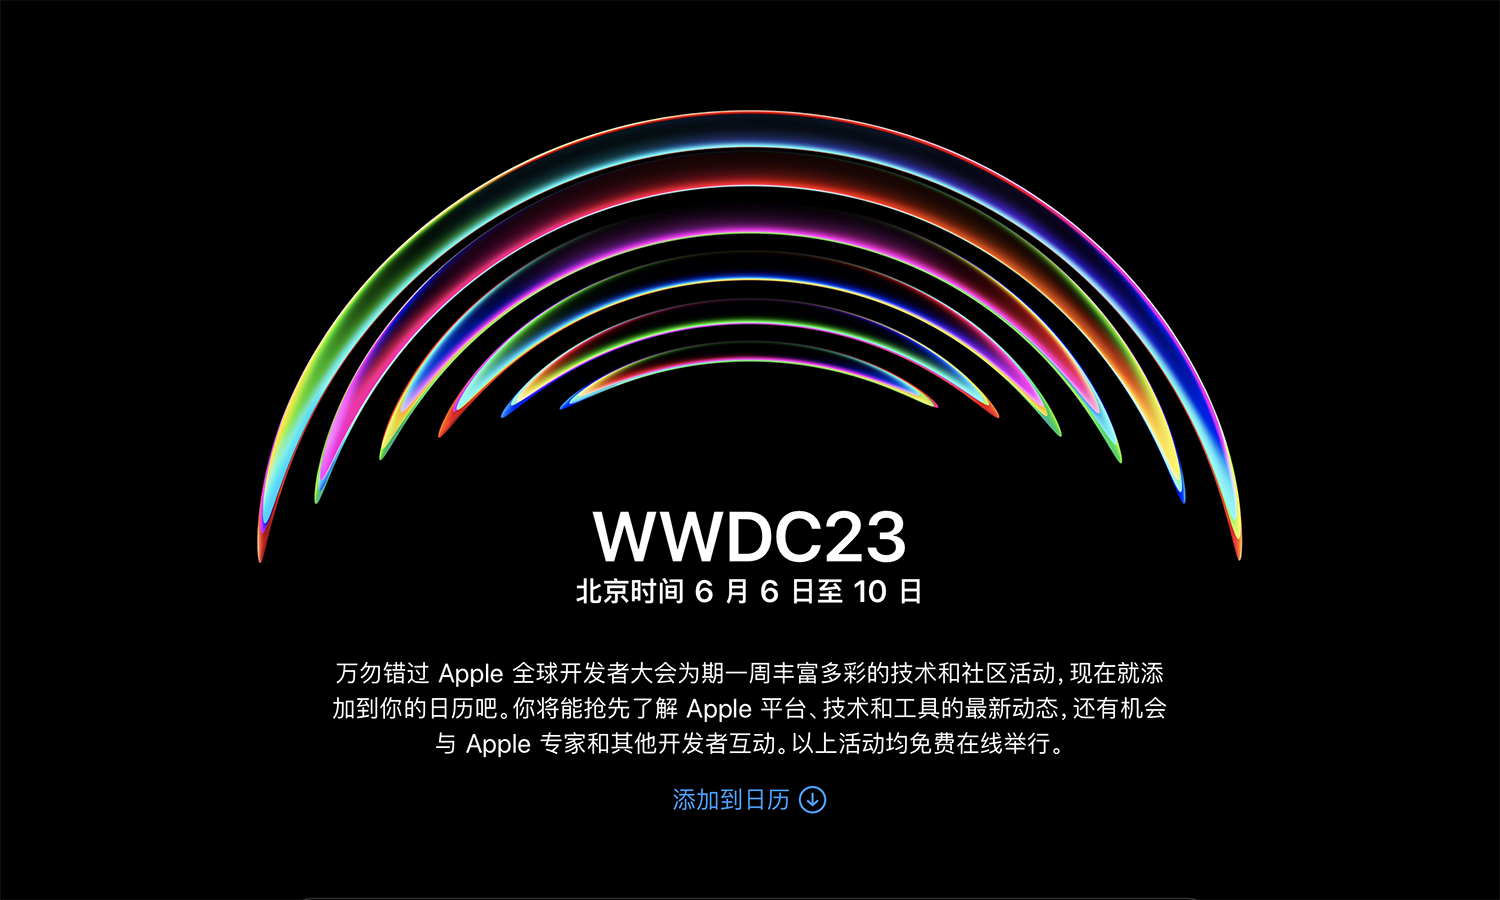 苹果 WWDC 将于 6 月 6 日开幕